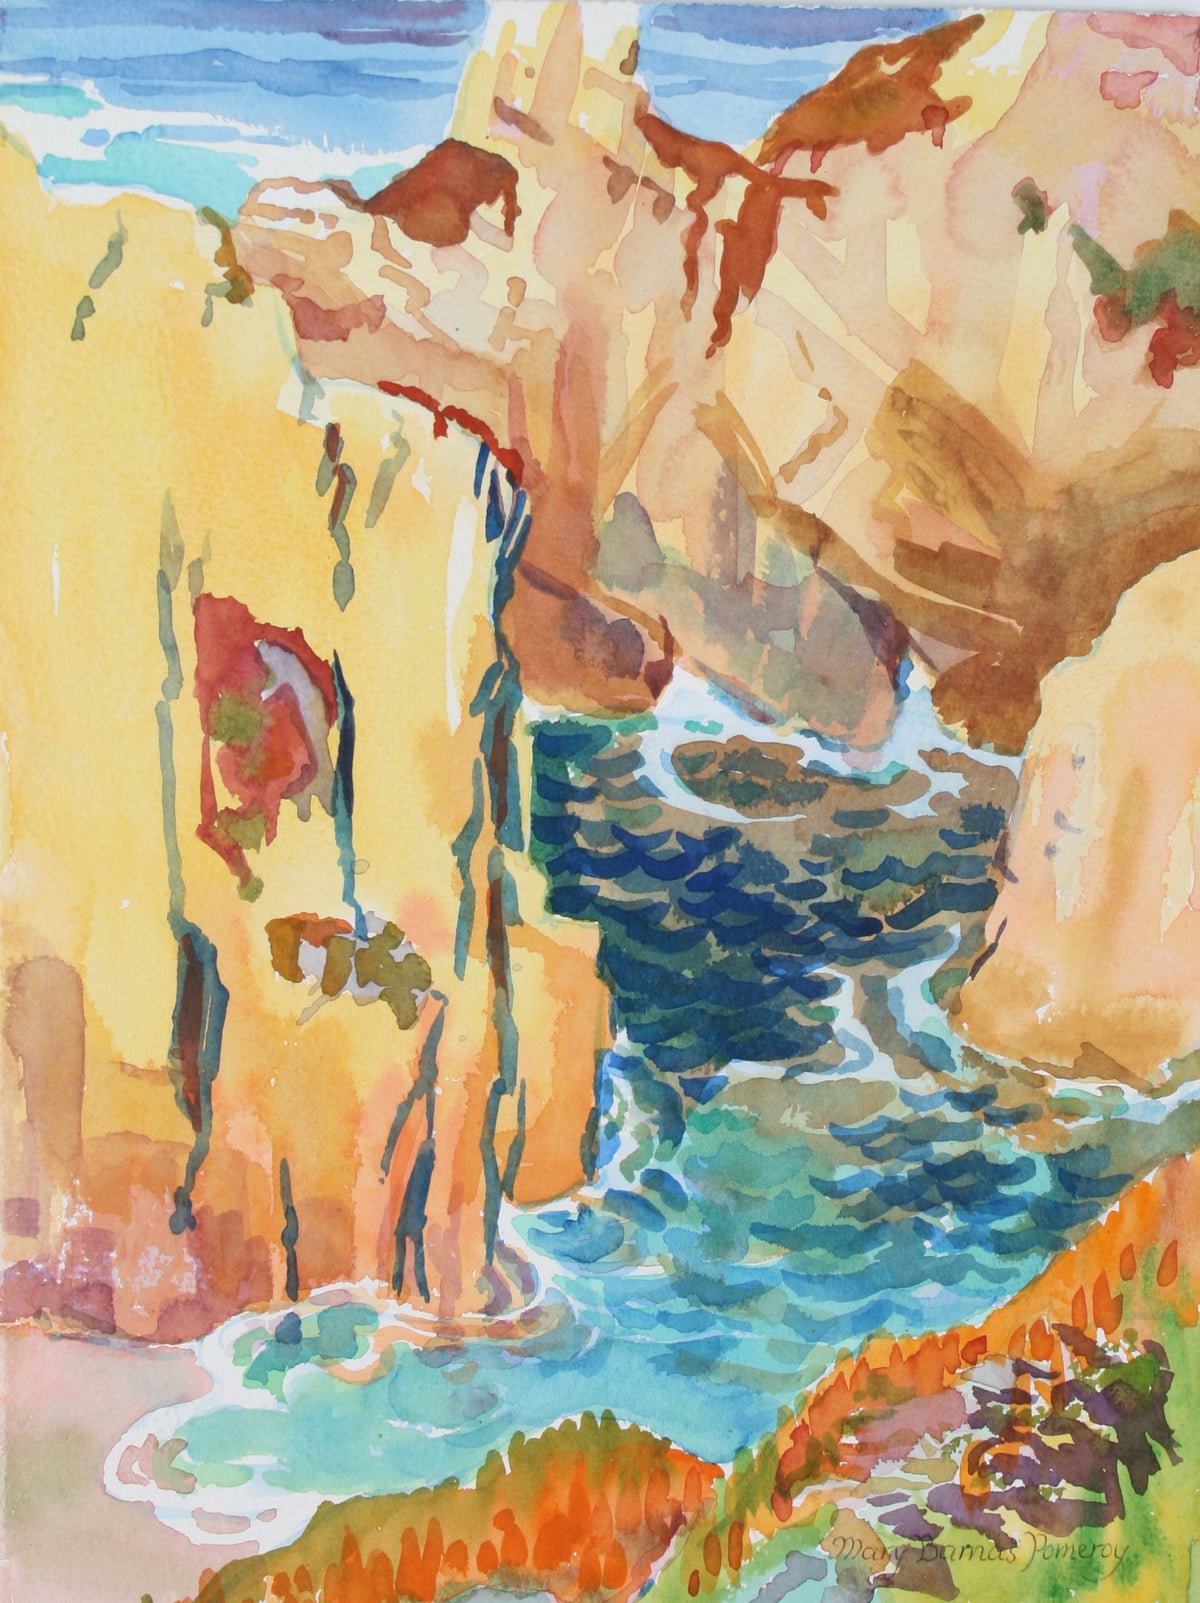 &lt;i&gt;Round the Cliffs&lt;/i&gt;&lt;br&gt;1987 Watercolor&lt;br&gt;&lt;br&gt;#72037